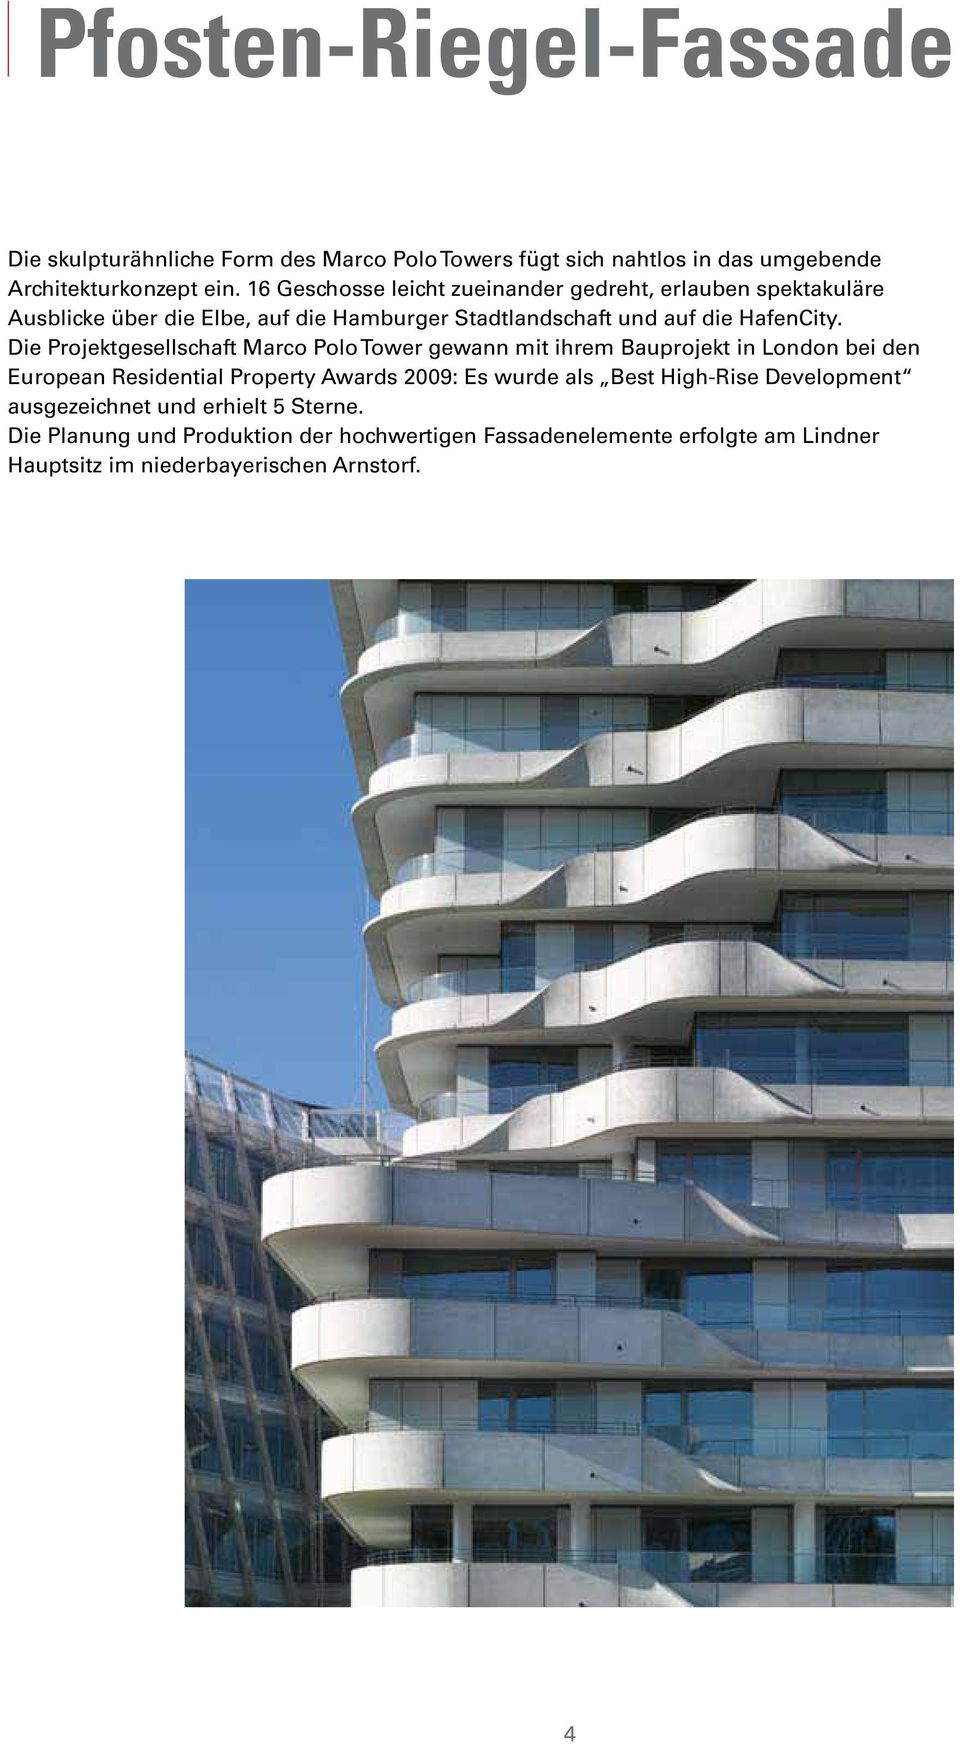 Die Projektgesellschaft Marco Polo Tower gewann mit ihrem Bauprojekt in London bei den European Residential Property Awards 2009: Es wurde als Best